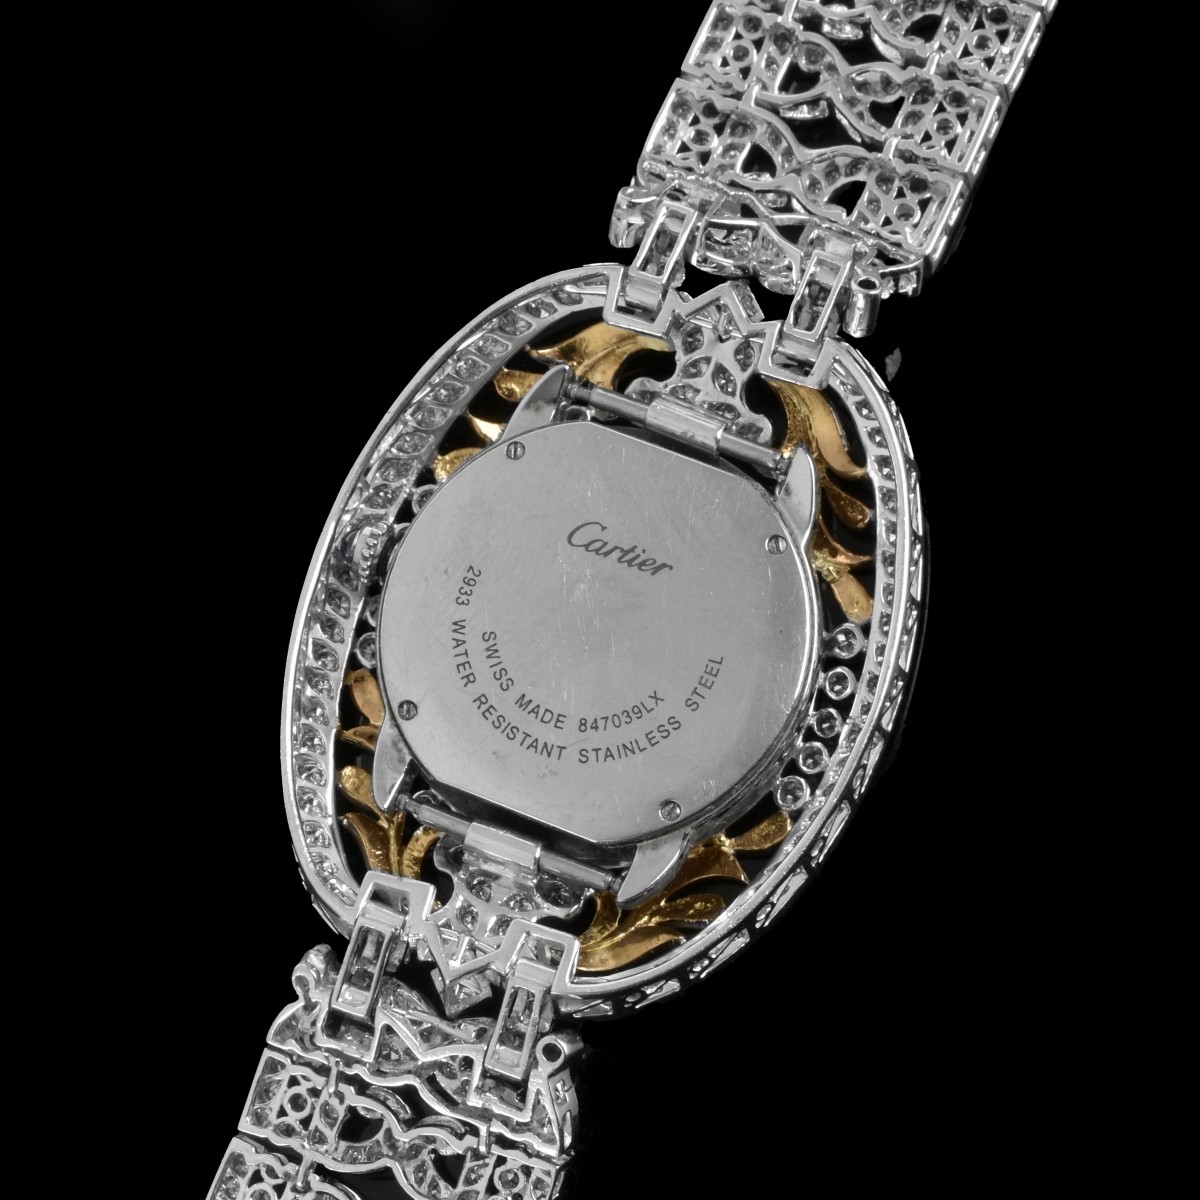 Diamond Bracelet with Cartier Watch